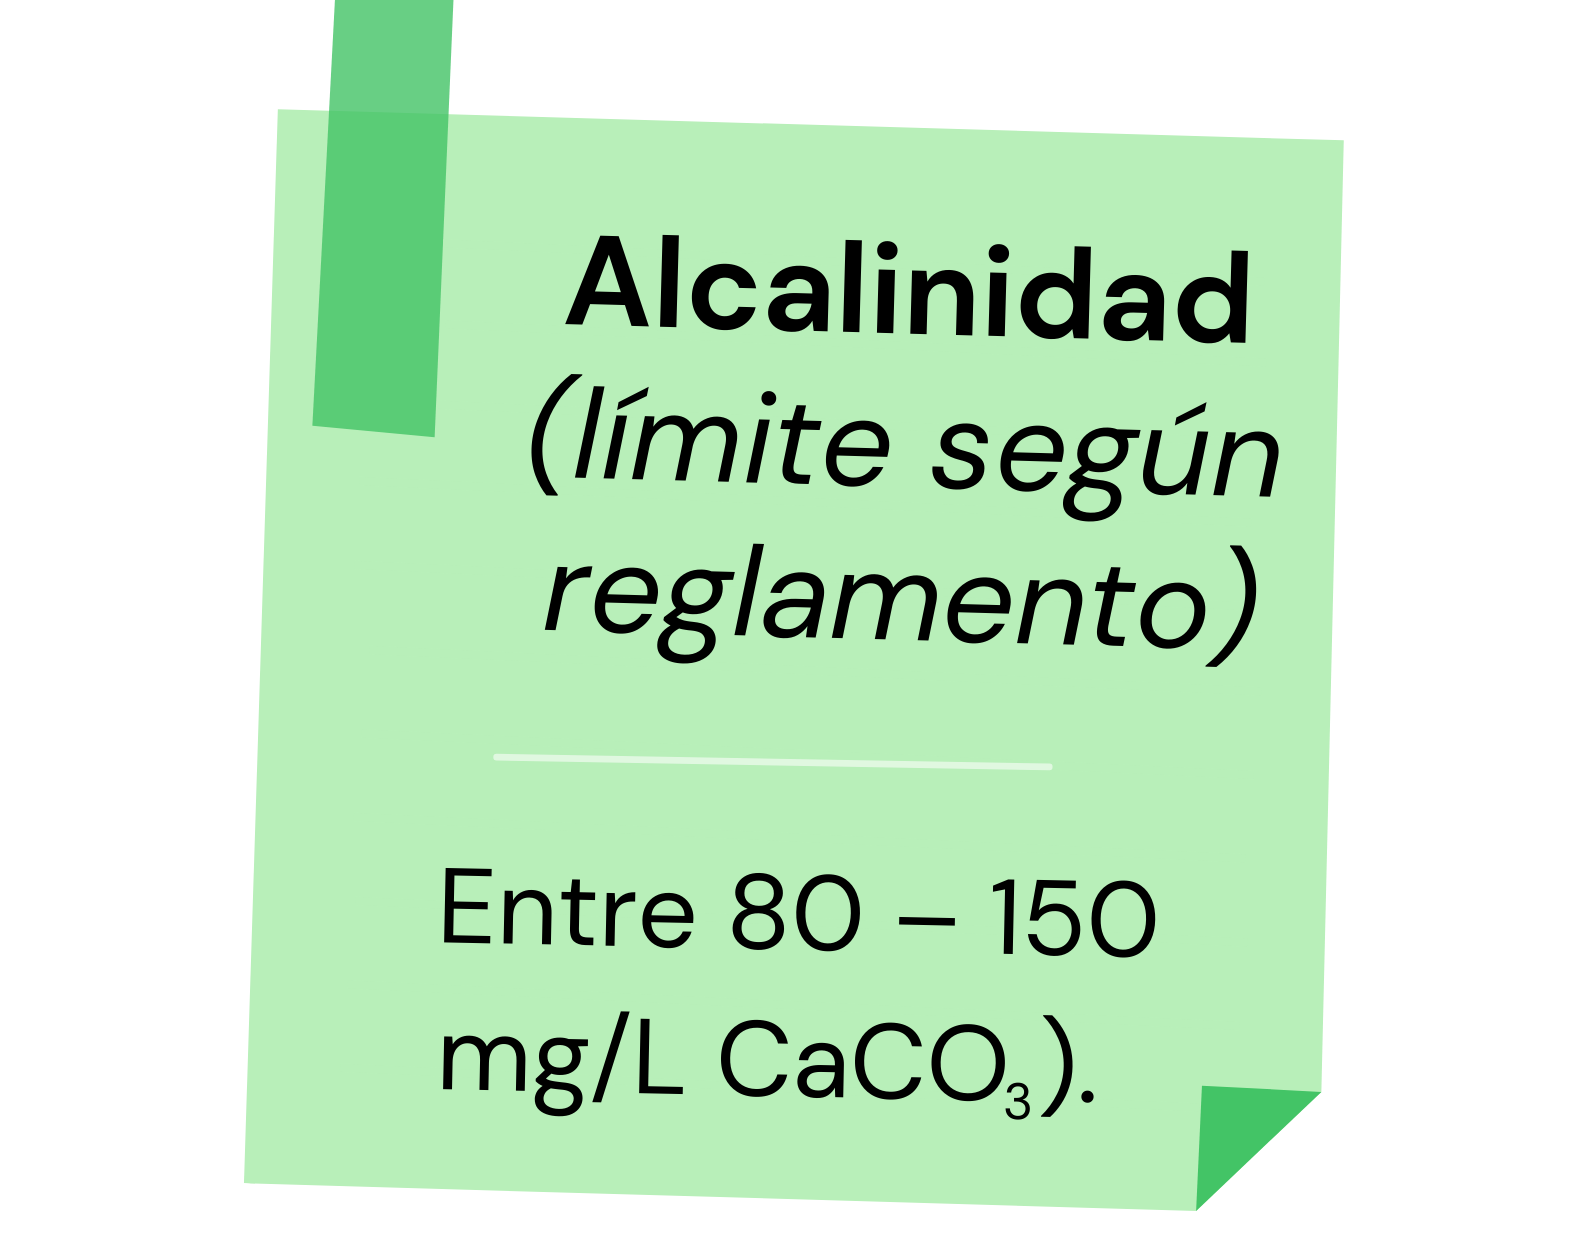 Según el Reglamento de Manejo de Piscinas el rango de alcalinidad debe mantenerse entre 80 – 150 ppm (mg/L CaCO3).  